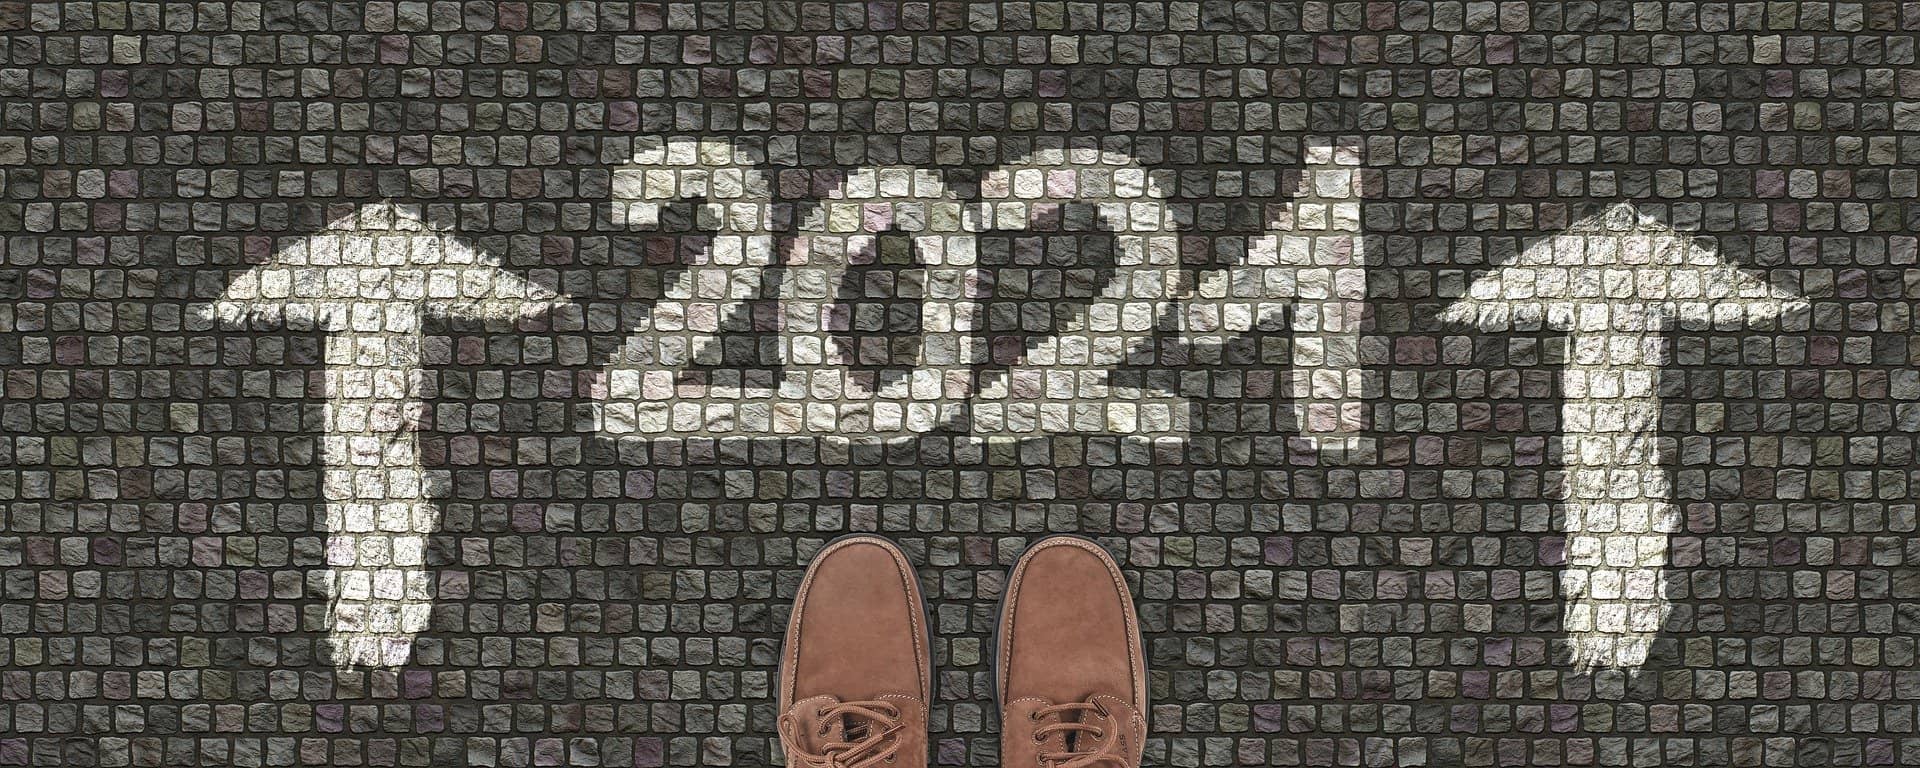 ¡FELIZ AÑO 2021! UNA MIRADA Y REVISIÓN 1